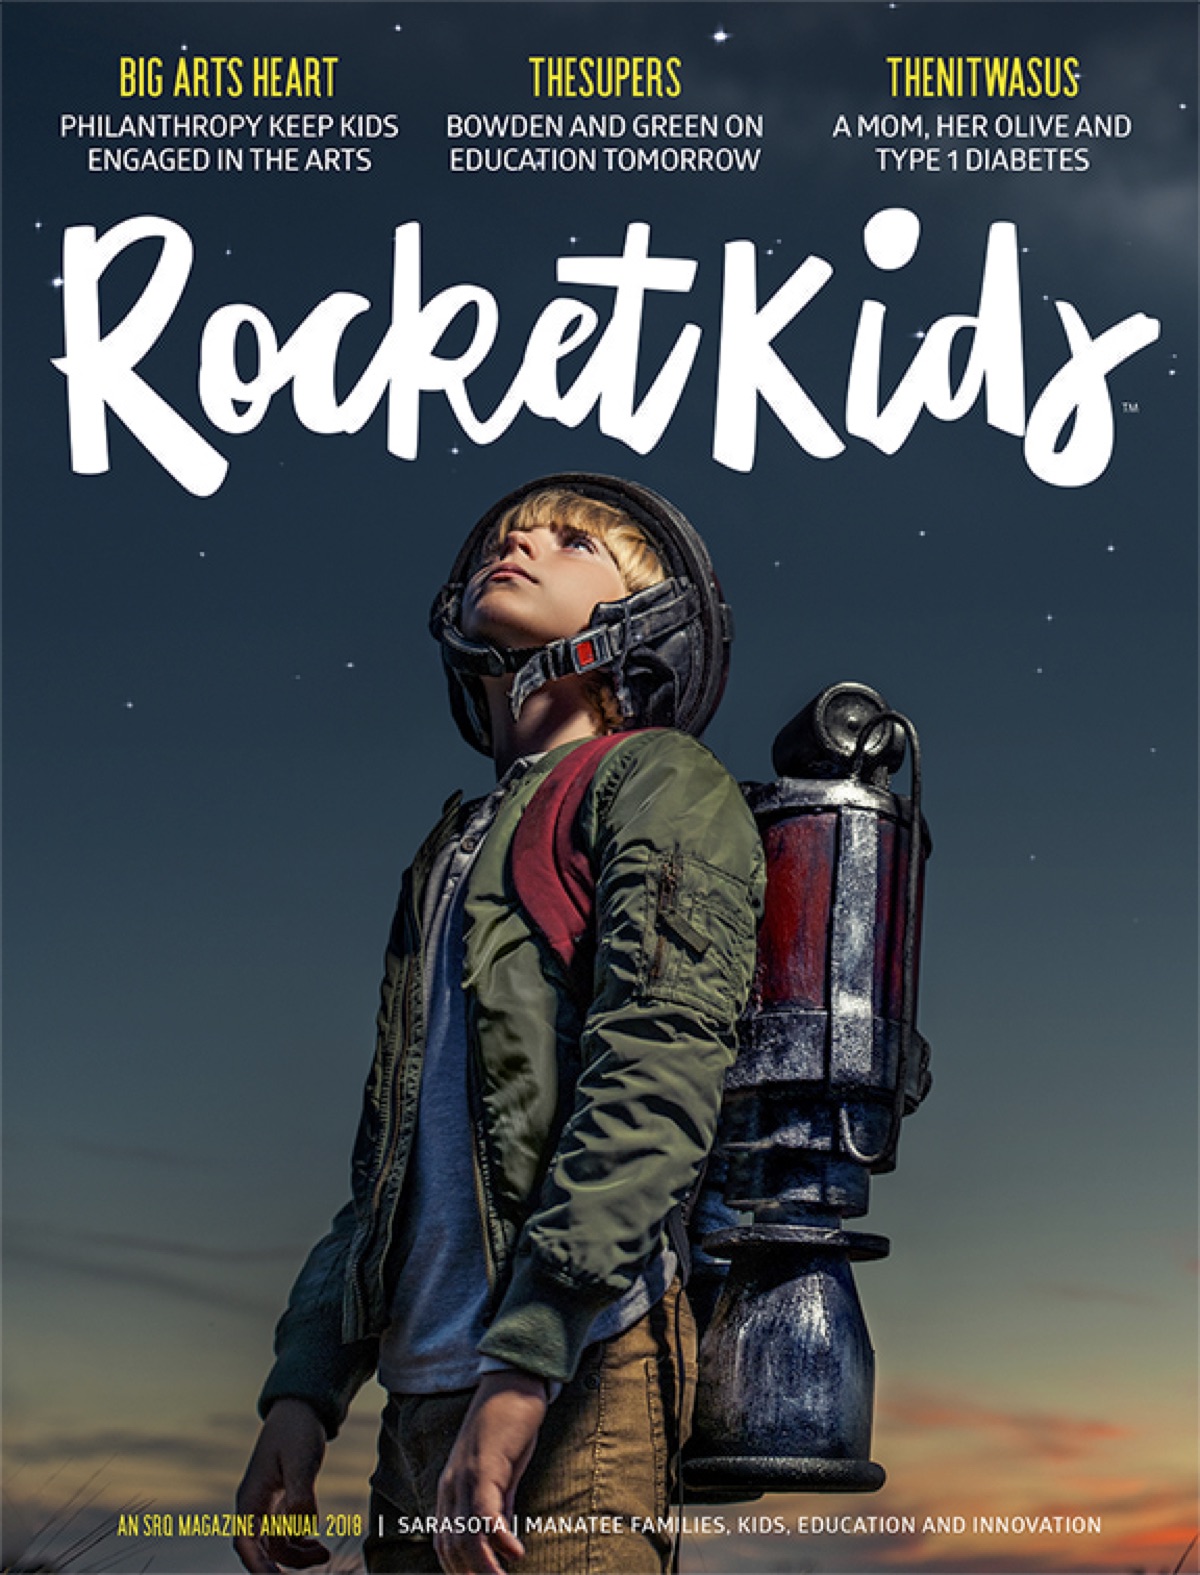 RocketKids